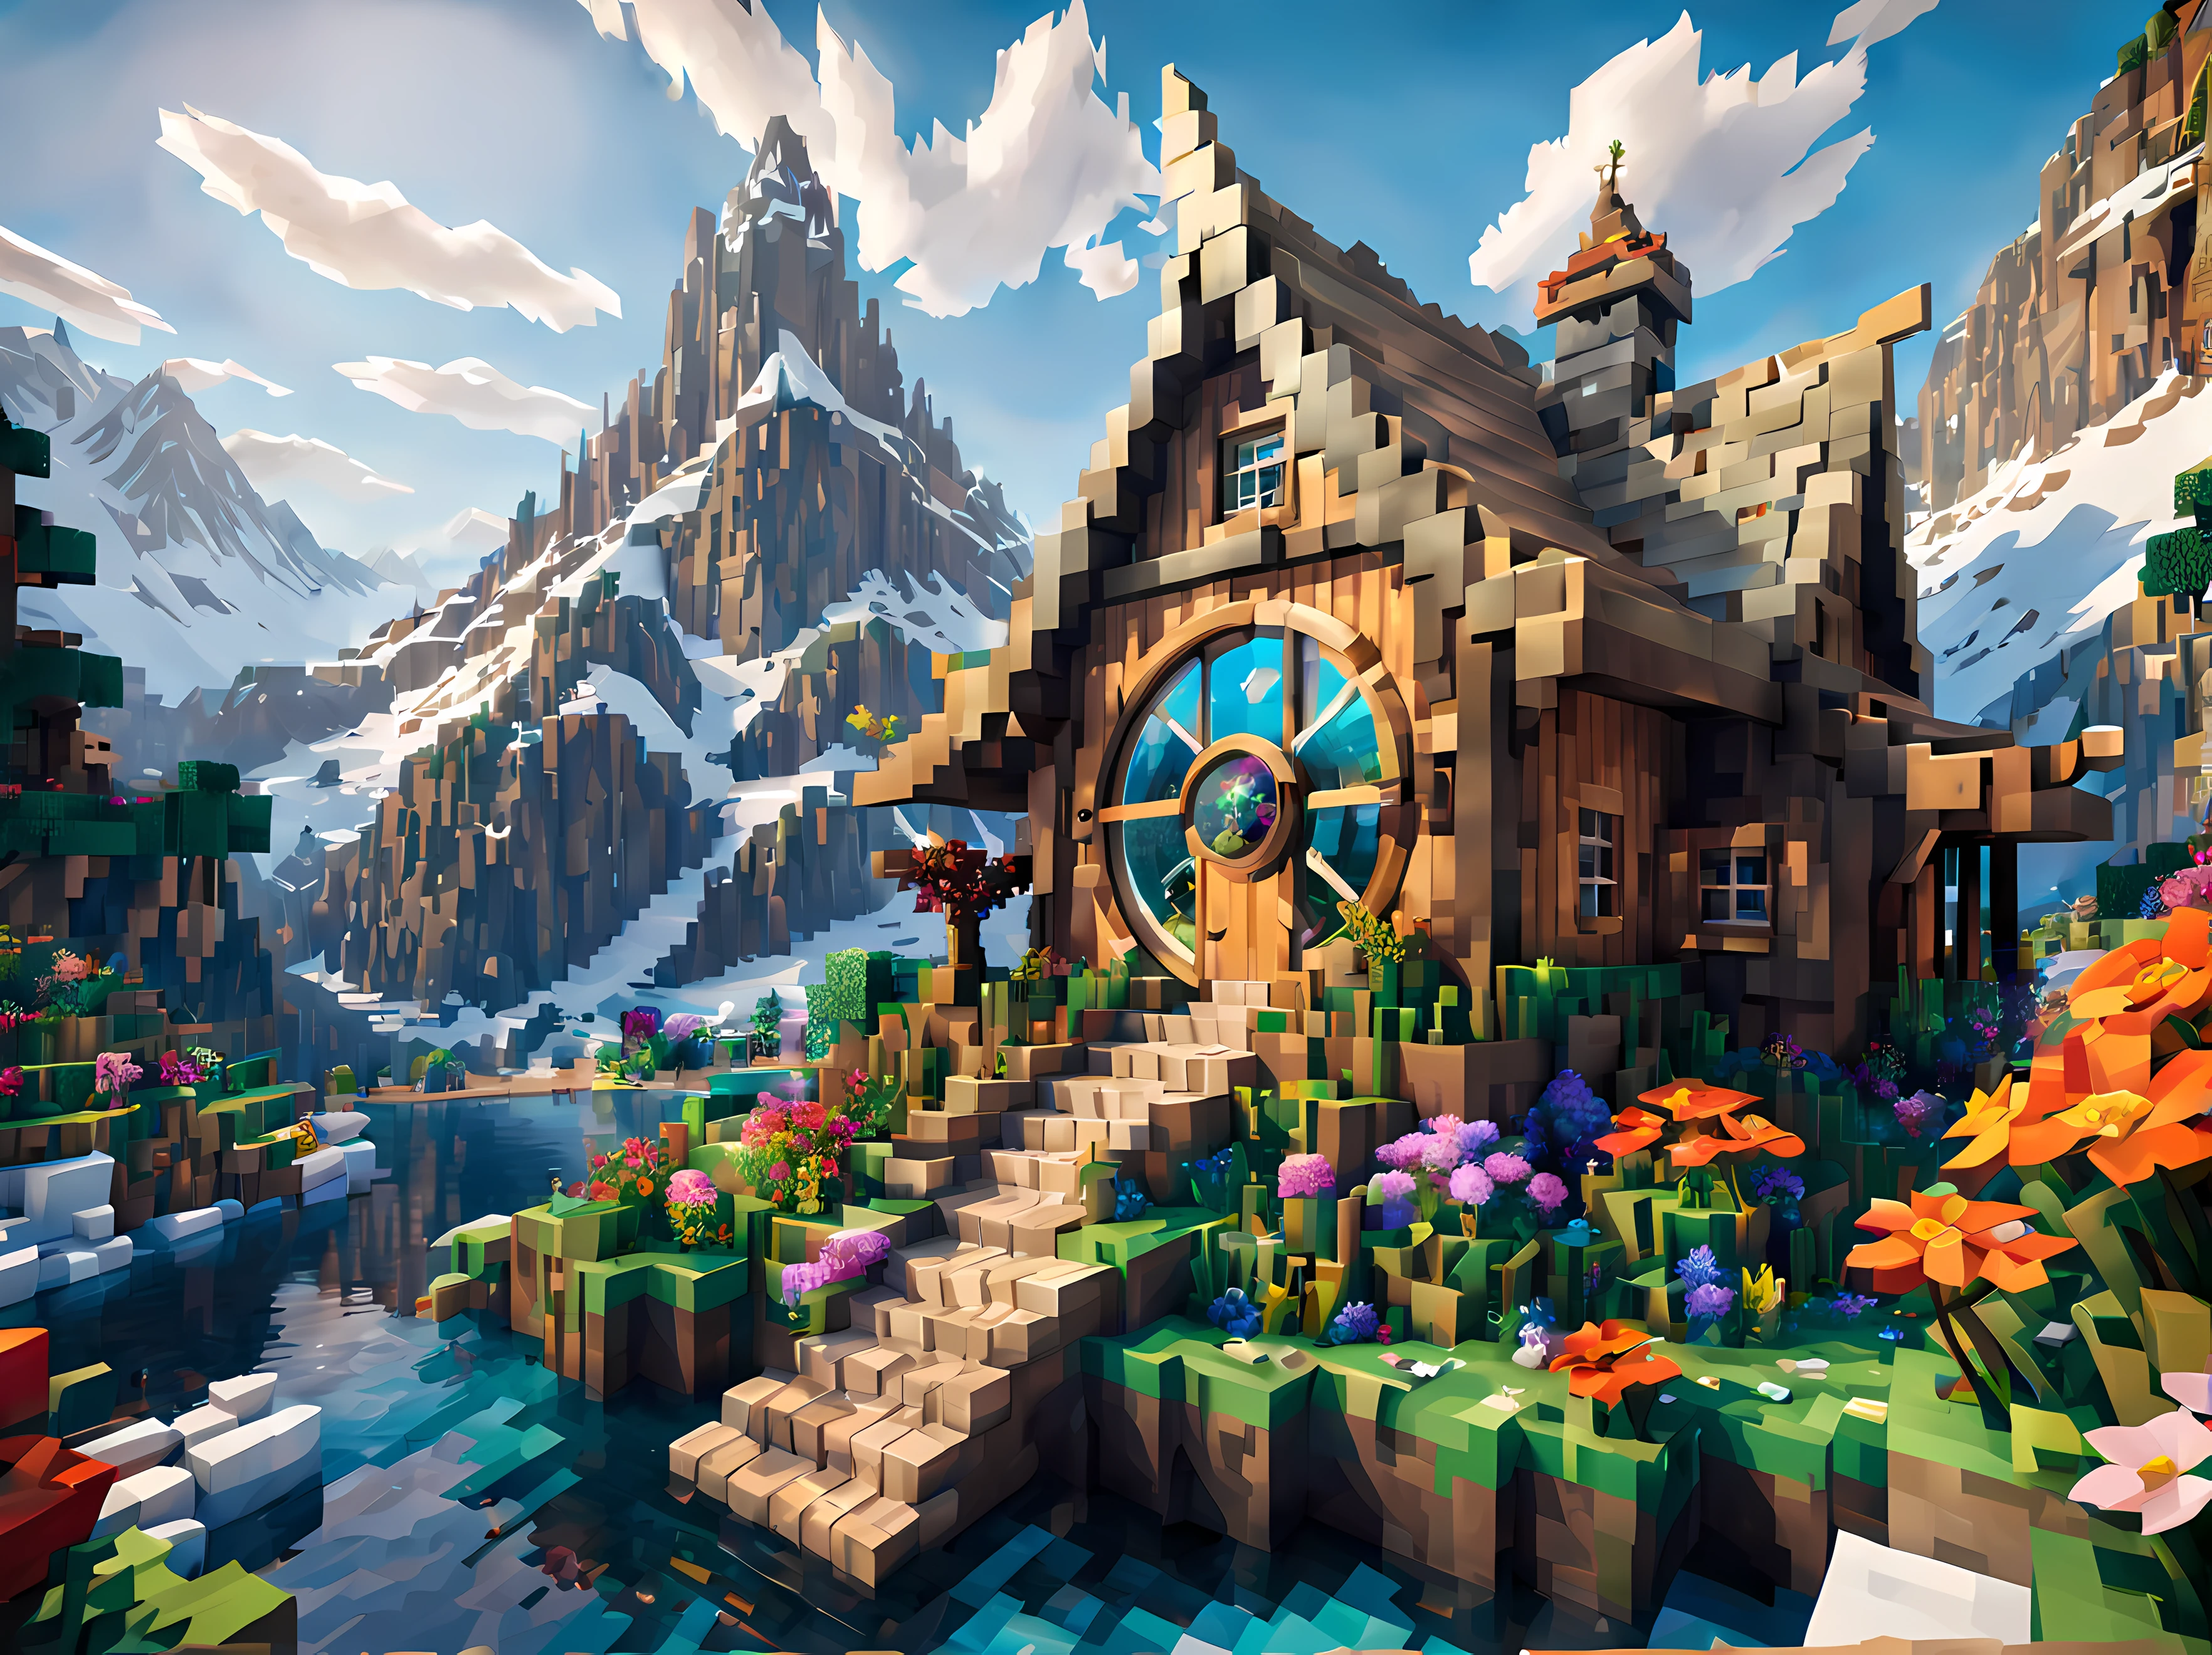 Estilo Minecraft (Ultrarealistic:1.3), grande (fada) cabine com janelas redondas, arte ambientalwork, arte ambiental, decorações elegantes, celebração, libra, (pescaria), (lindo:1.4), (atraente:1.3), montanhas nevadas épicas, natureza ventosa do verão, bloqueado, pixelizado, cores vibrantes, (Dragão no céu), Flores